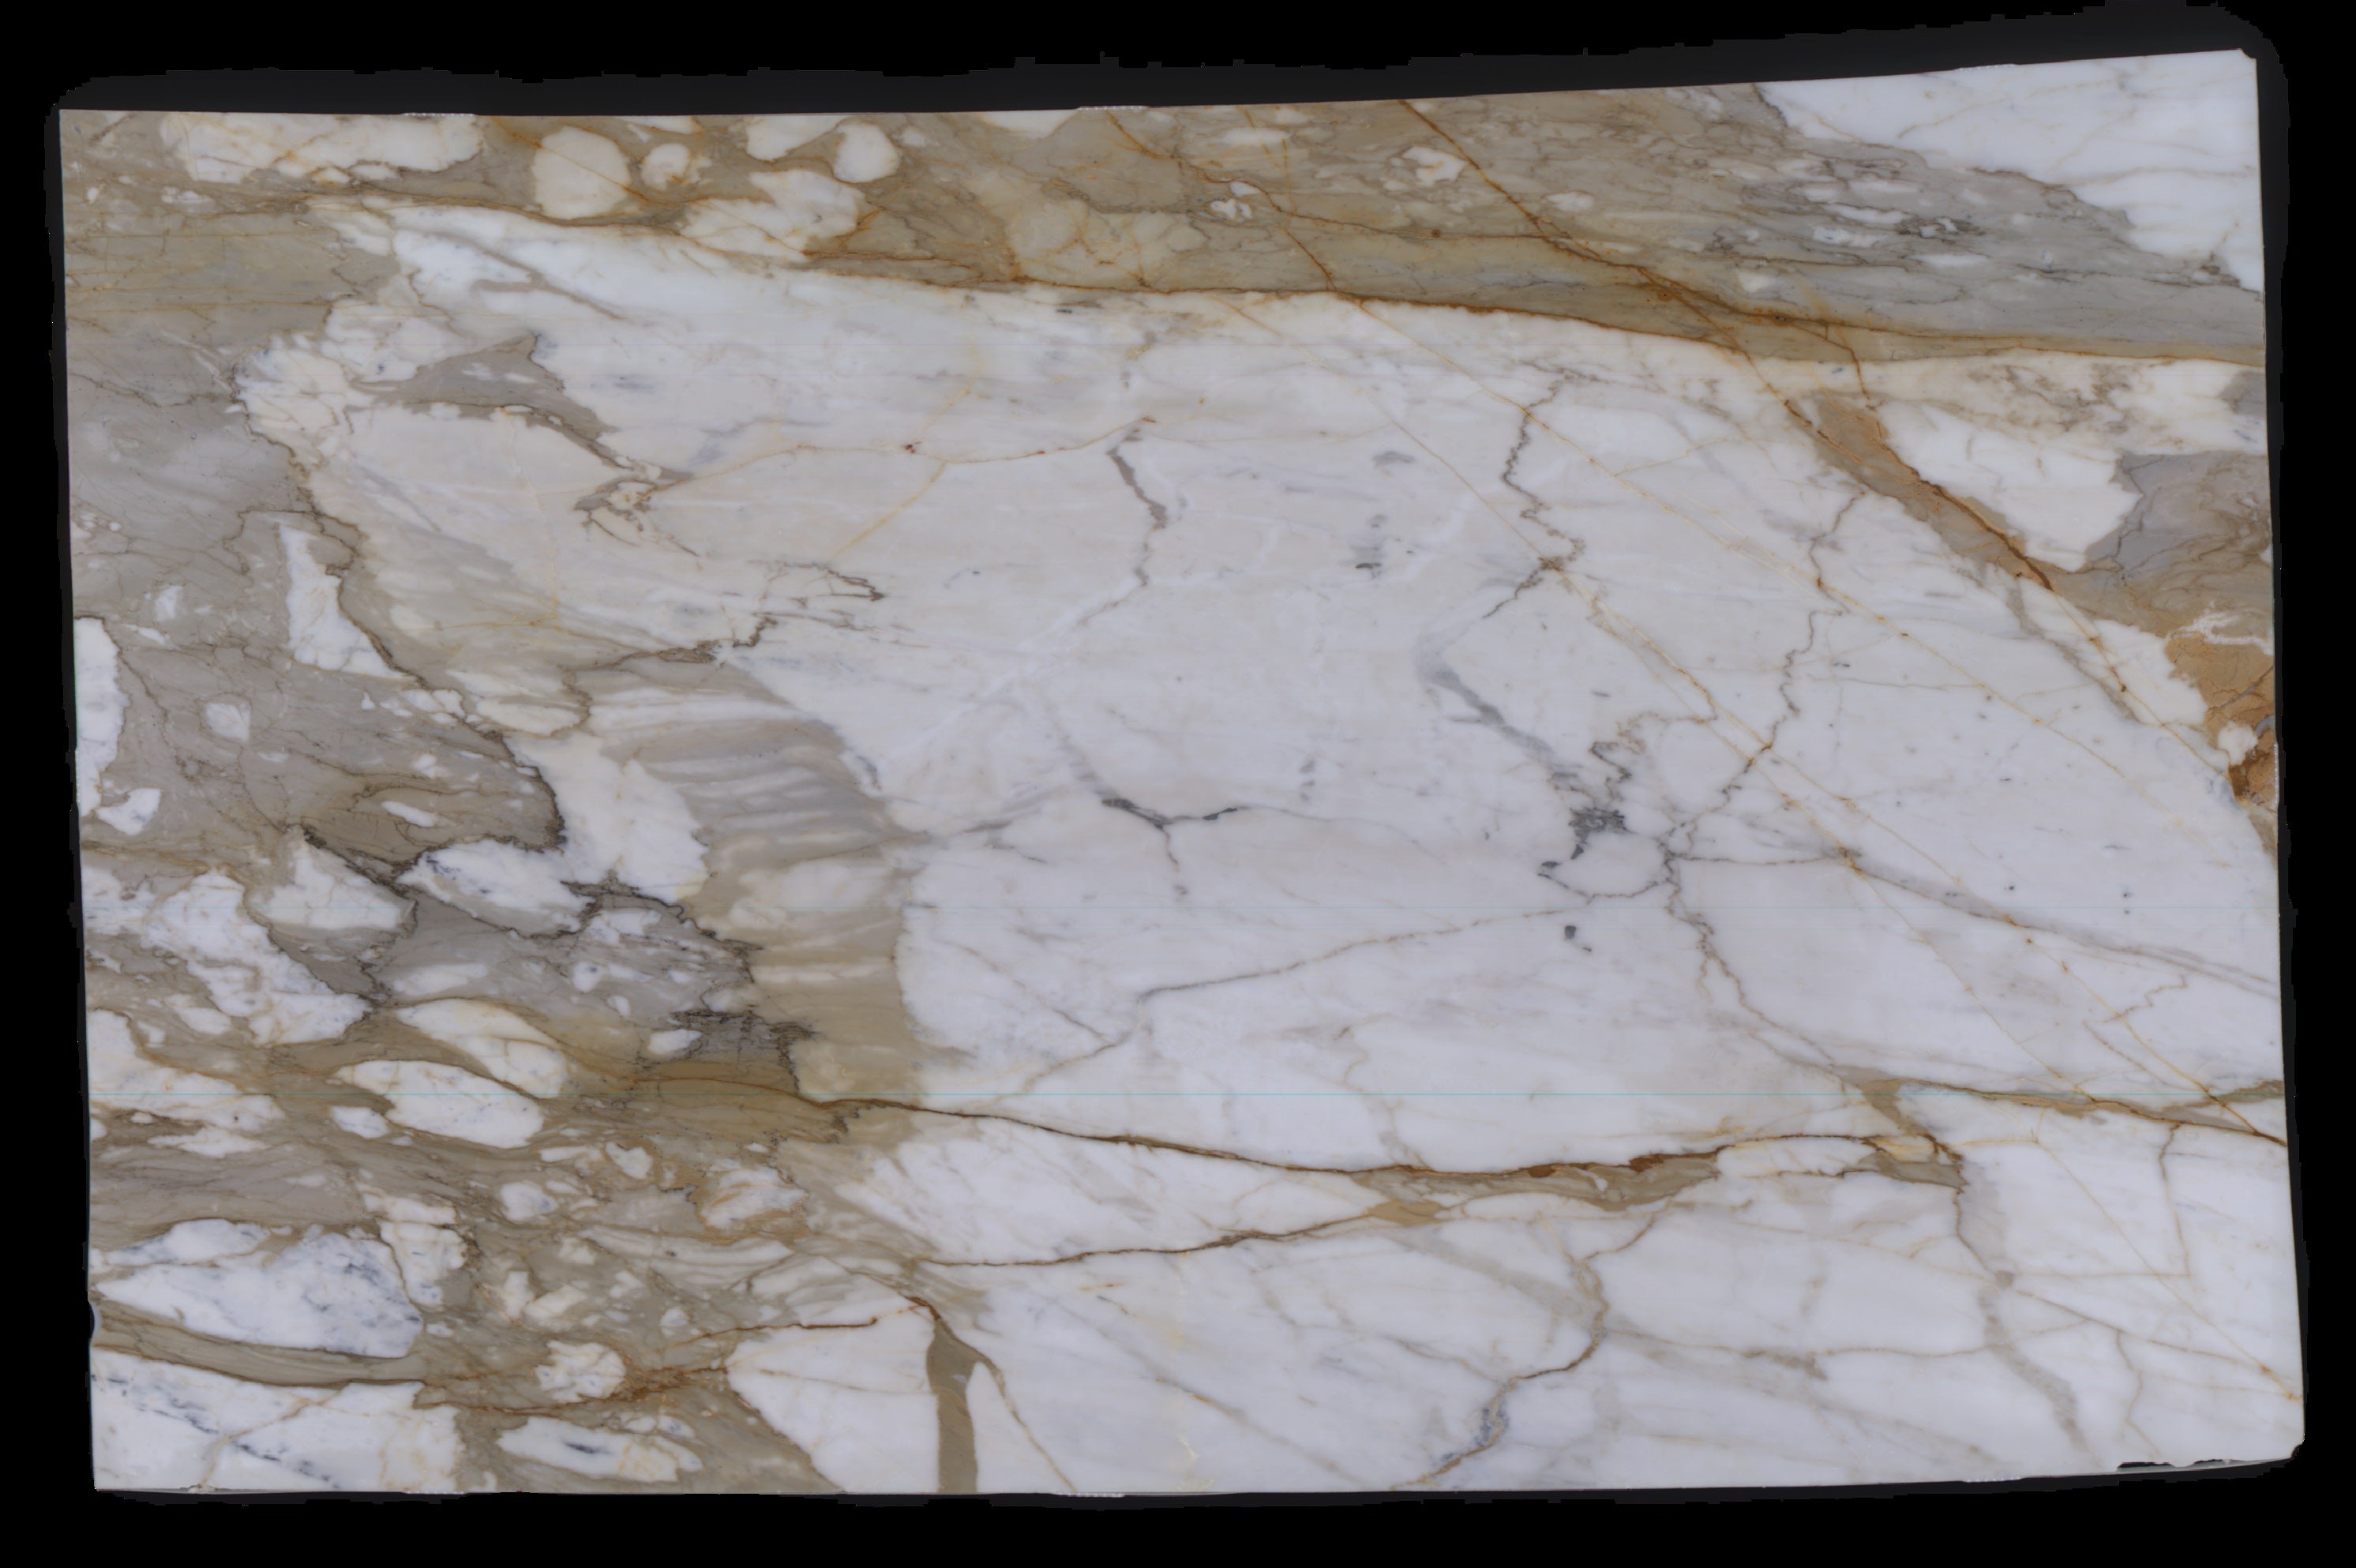  Calacatta Macchia Vecchia Marble Slab 3/4 - 953#24 -  VS 70x113 